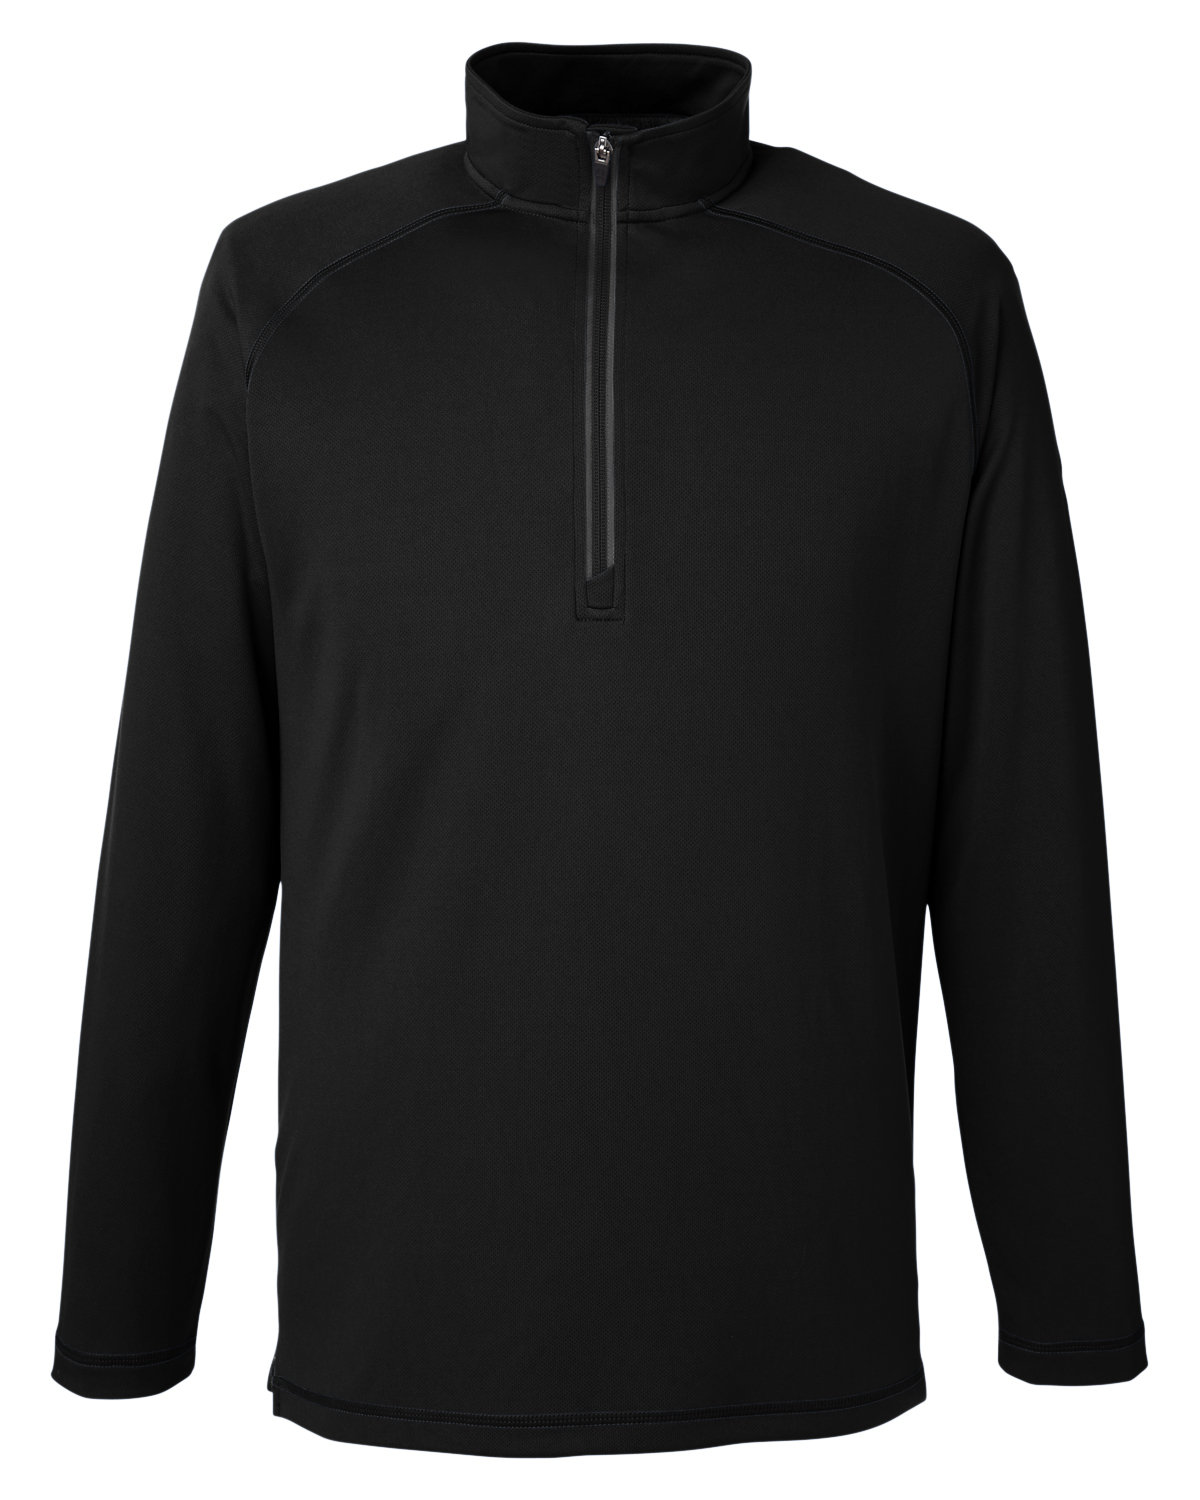 Spyder S16797 - Men's Freestyle Half-Zip Pullover $39.00 - Sweatshirts